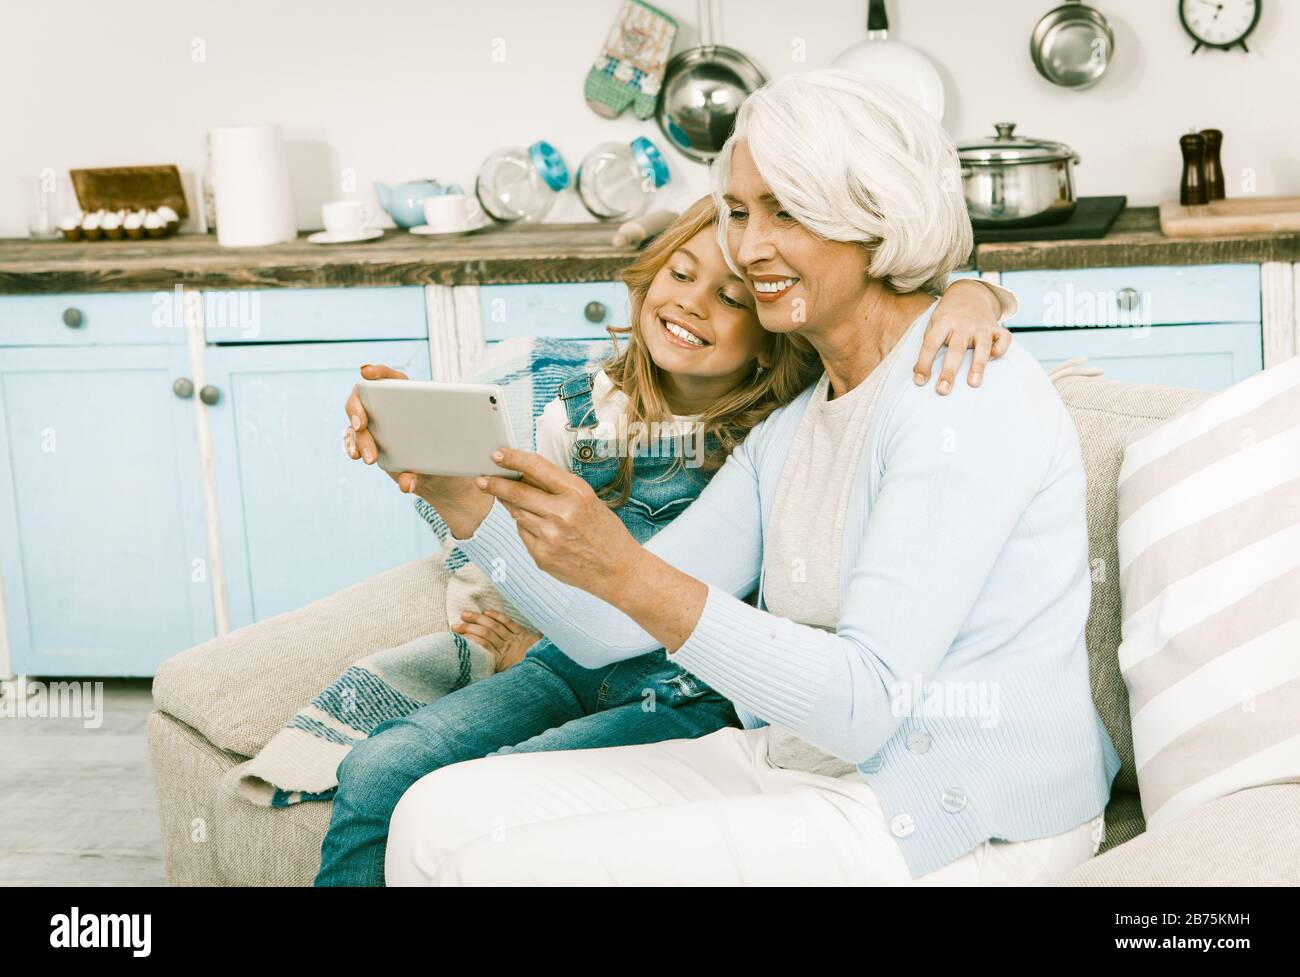 Senior Und New Generation Entscheiden Sich Für New Technologies Oma Und Enkelin Machen Selbstfotos, Selfies On Smart Phone, Während Sie Auf Sofa In Ho Sitzen Stockfoto